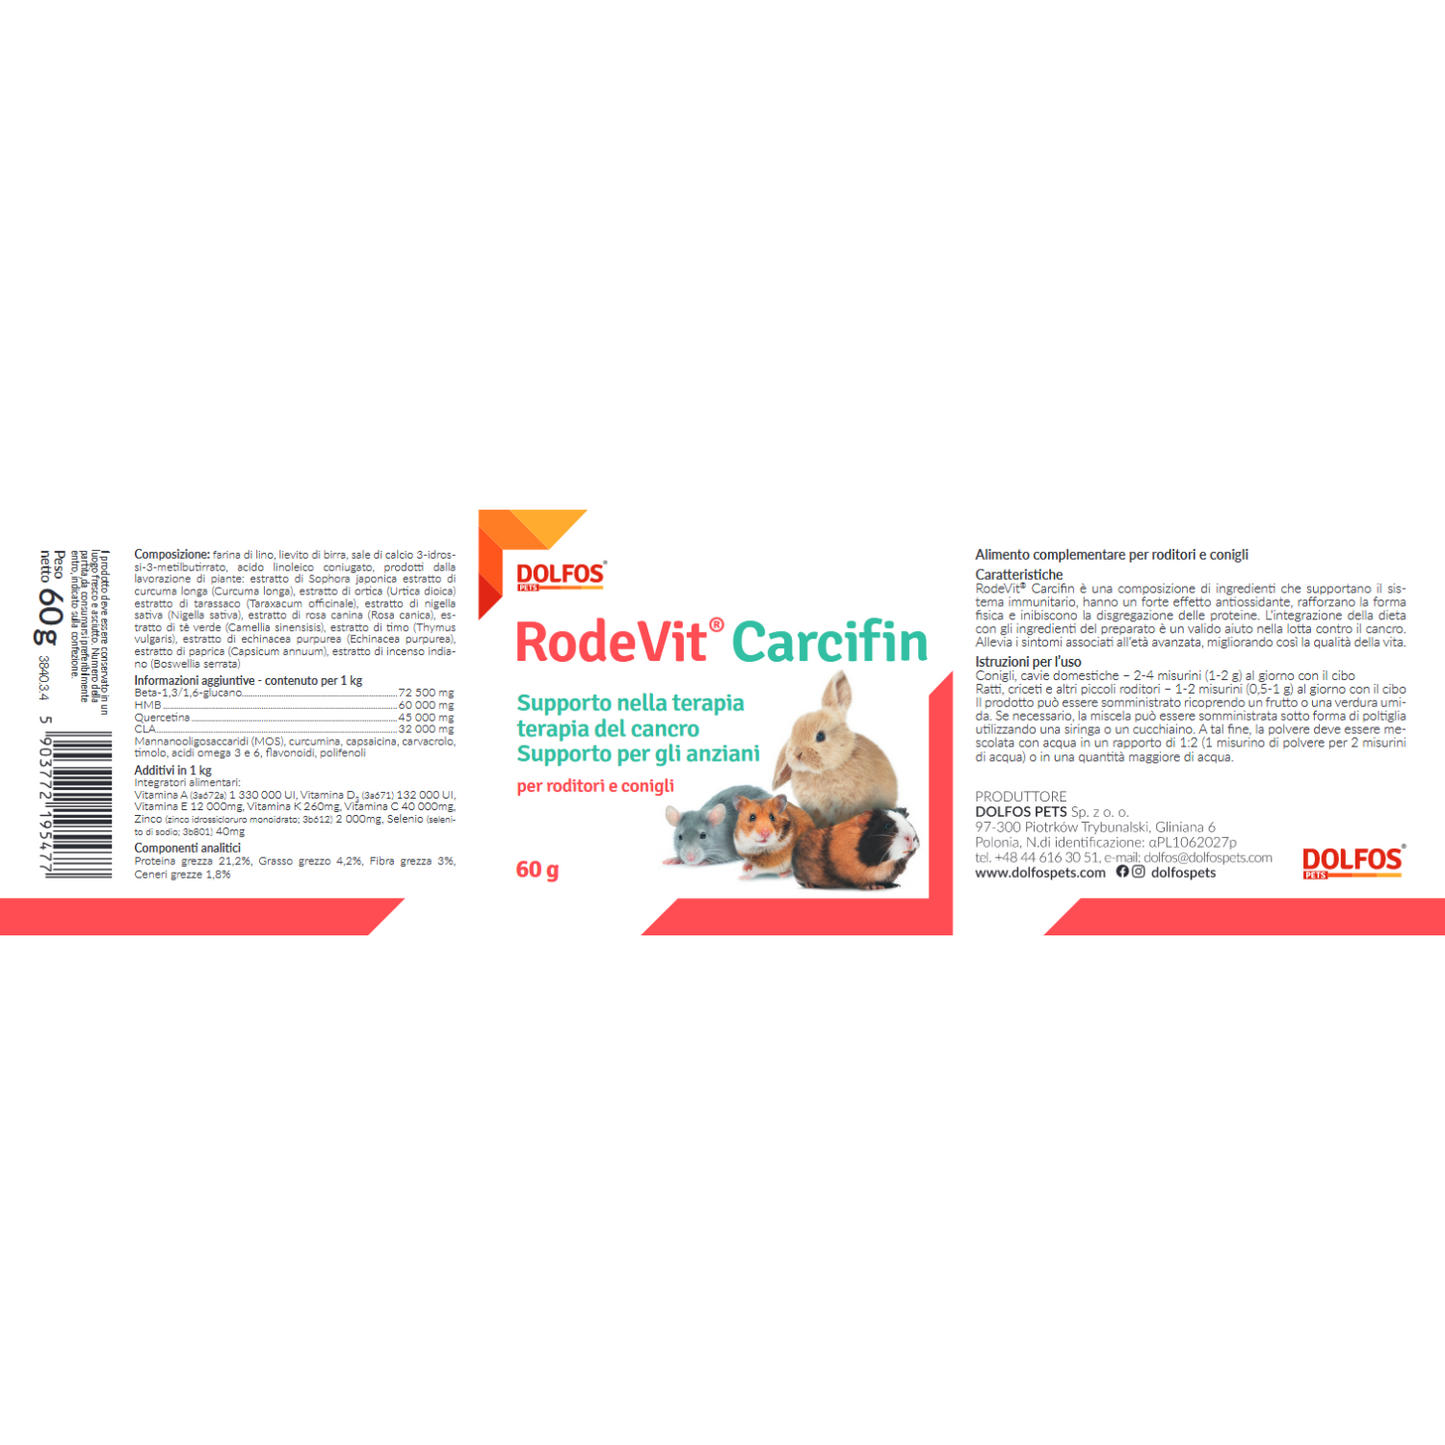 RodeVit Carcifin " .. supporto alla terapia contro il cancro, supporto per anziani.."